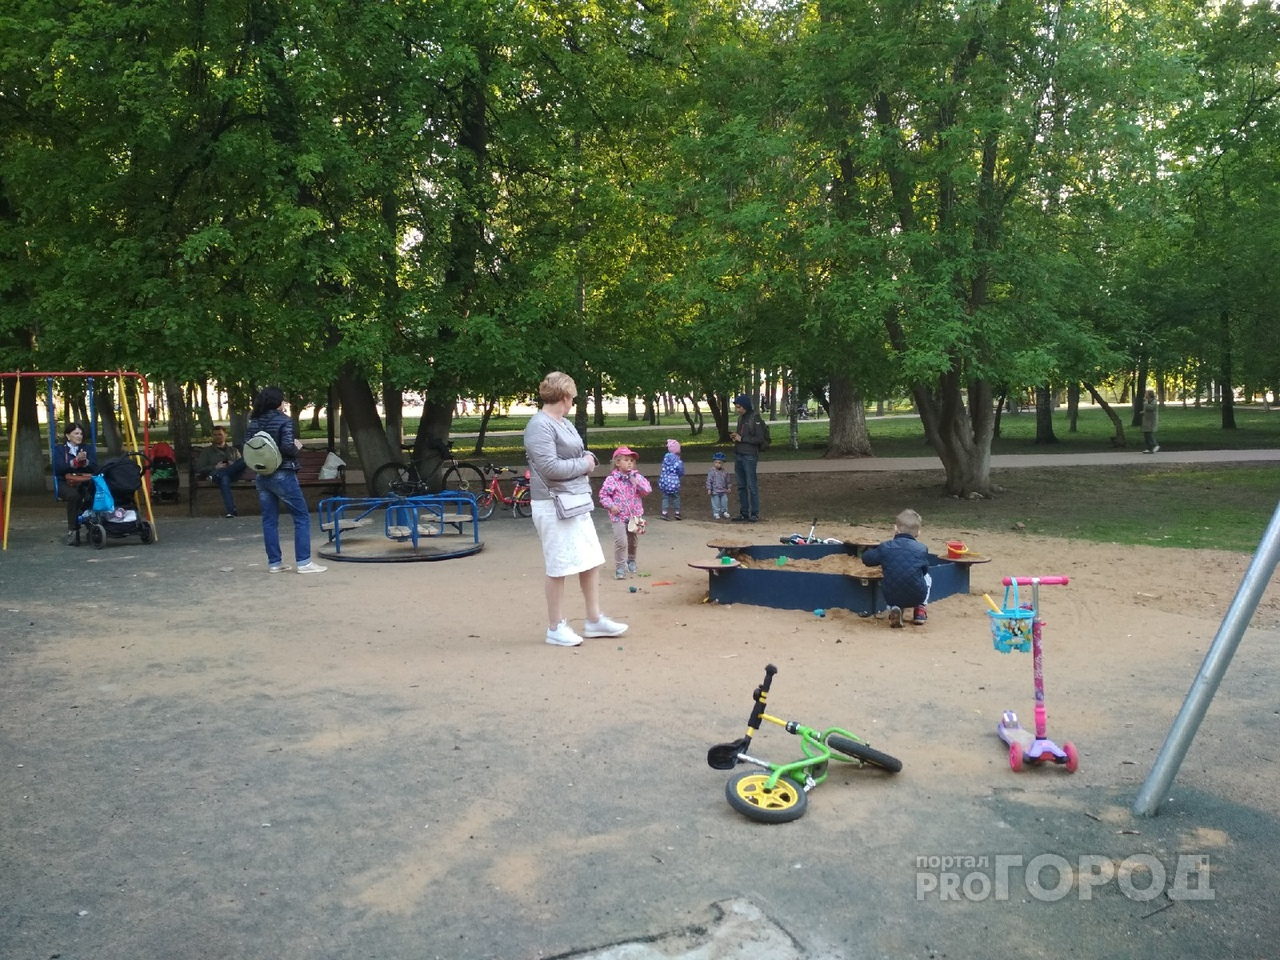 "Сложили вещи, как сироты": как провести лето в детсадах Ярославля и выжить